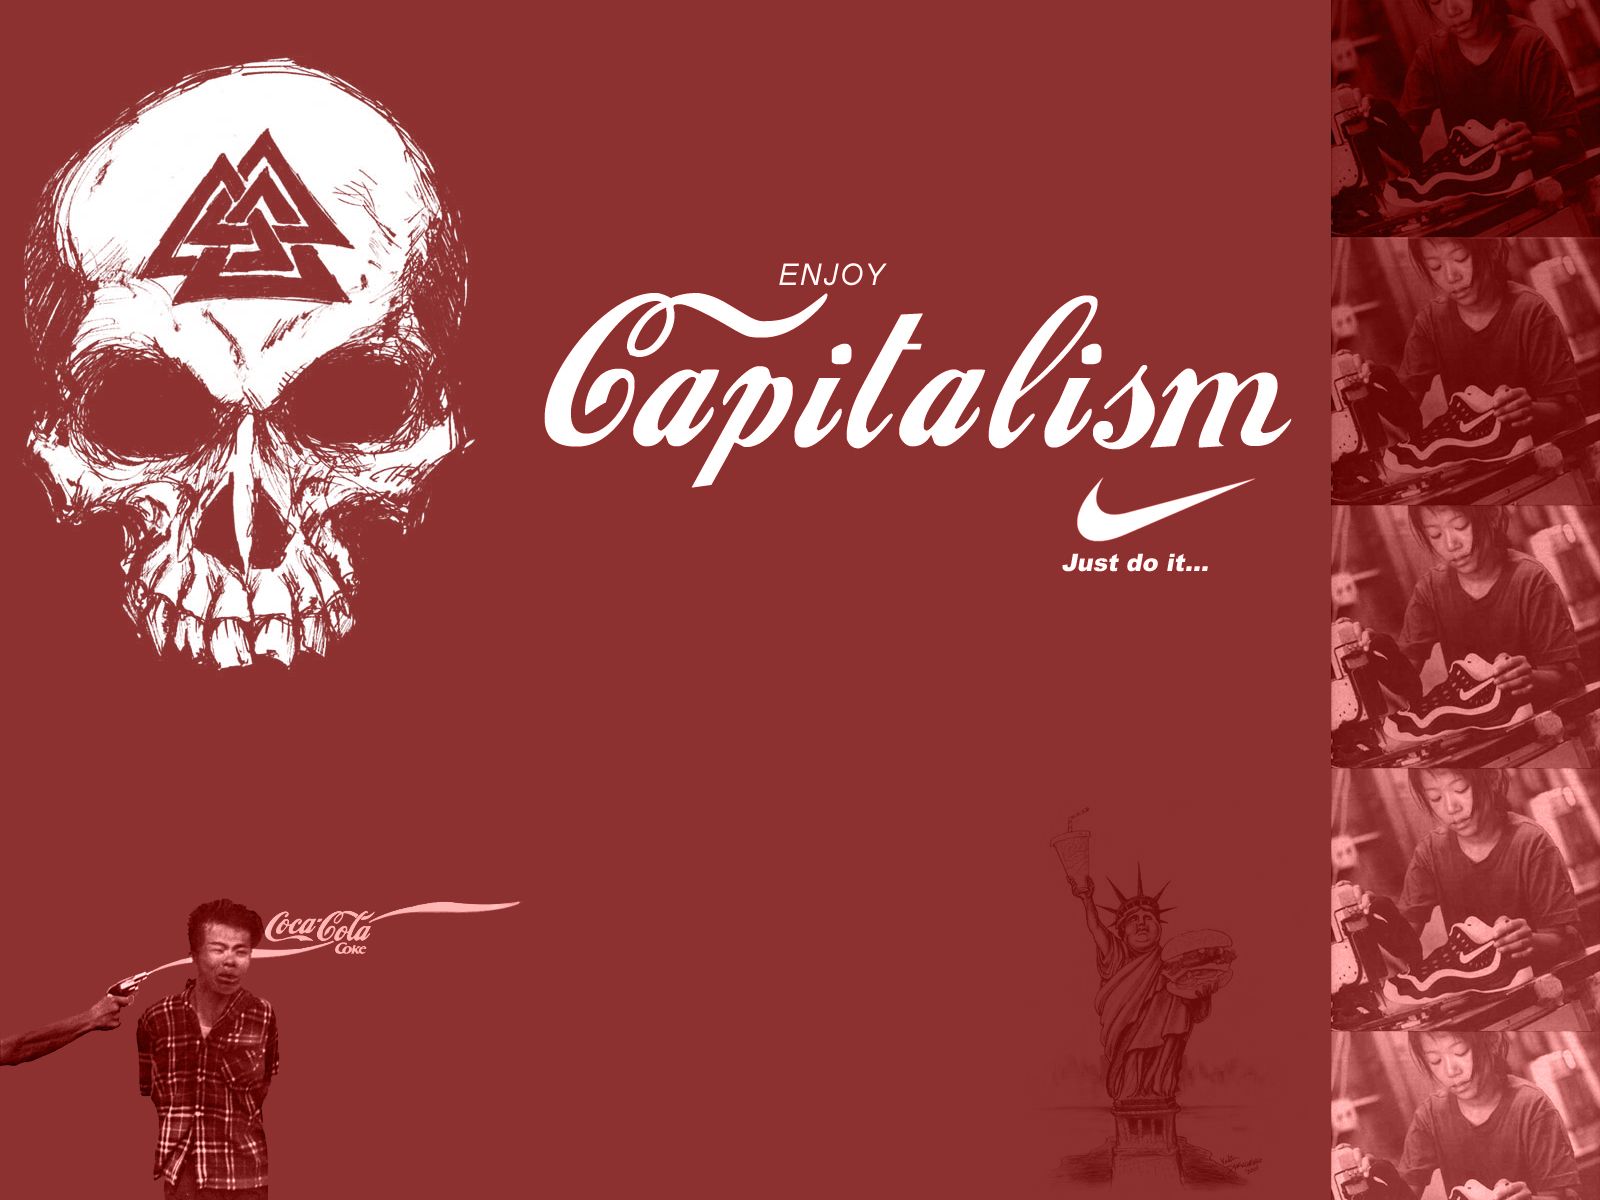 Capitalism Wallpaper. Anti Capitalism Wallpaper, Enjoy Capitalism Wallpaper And Capitalism Wallpaper